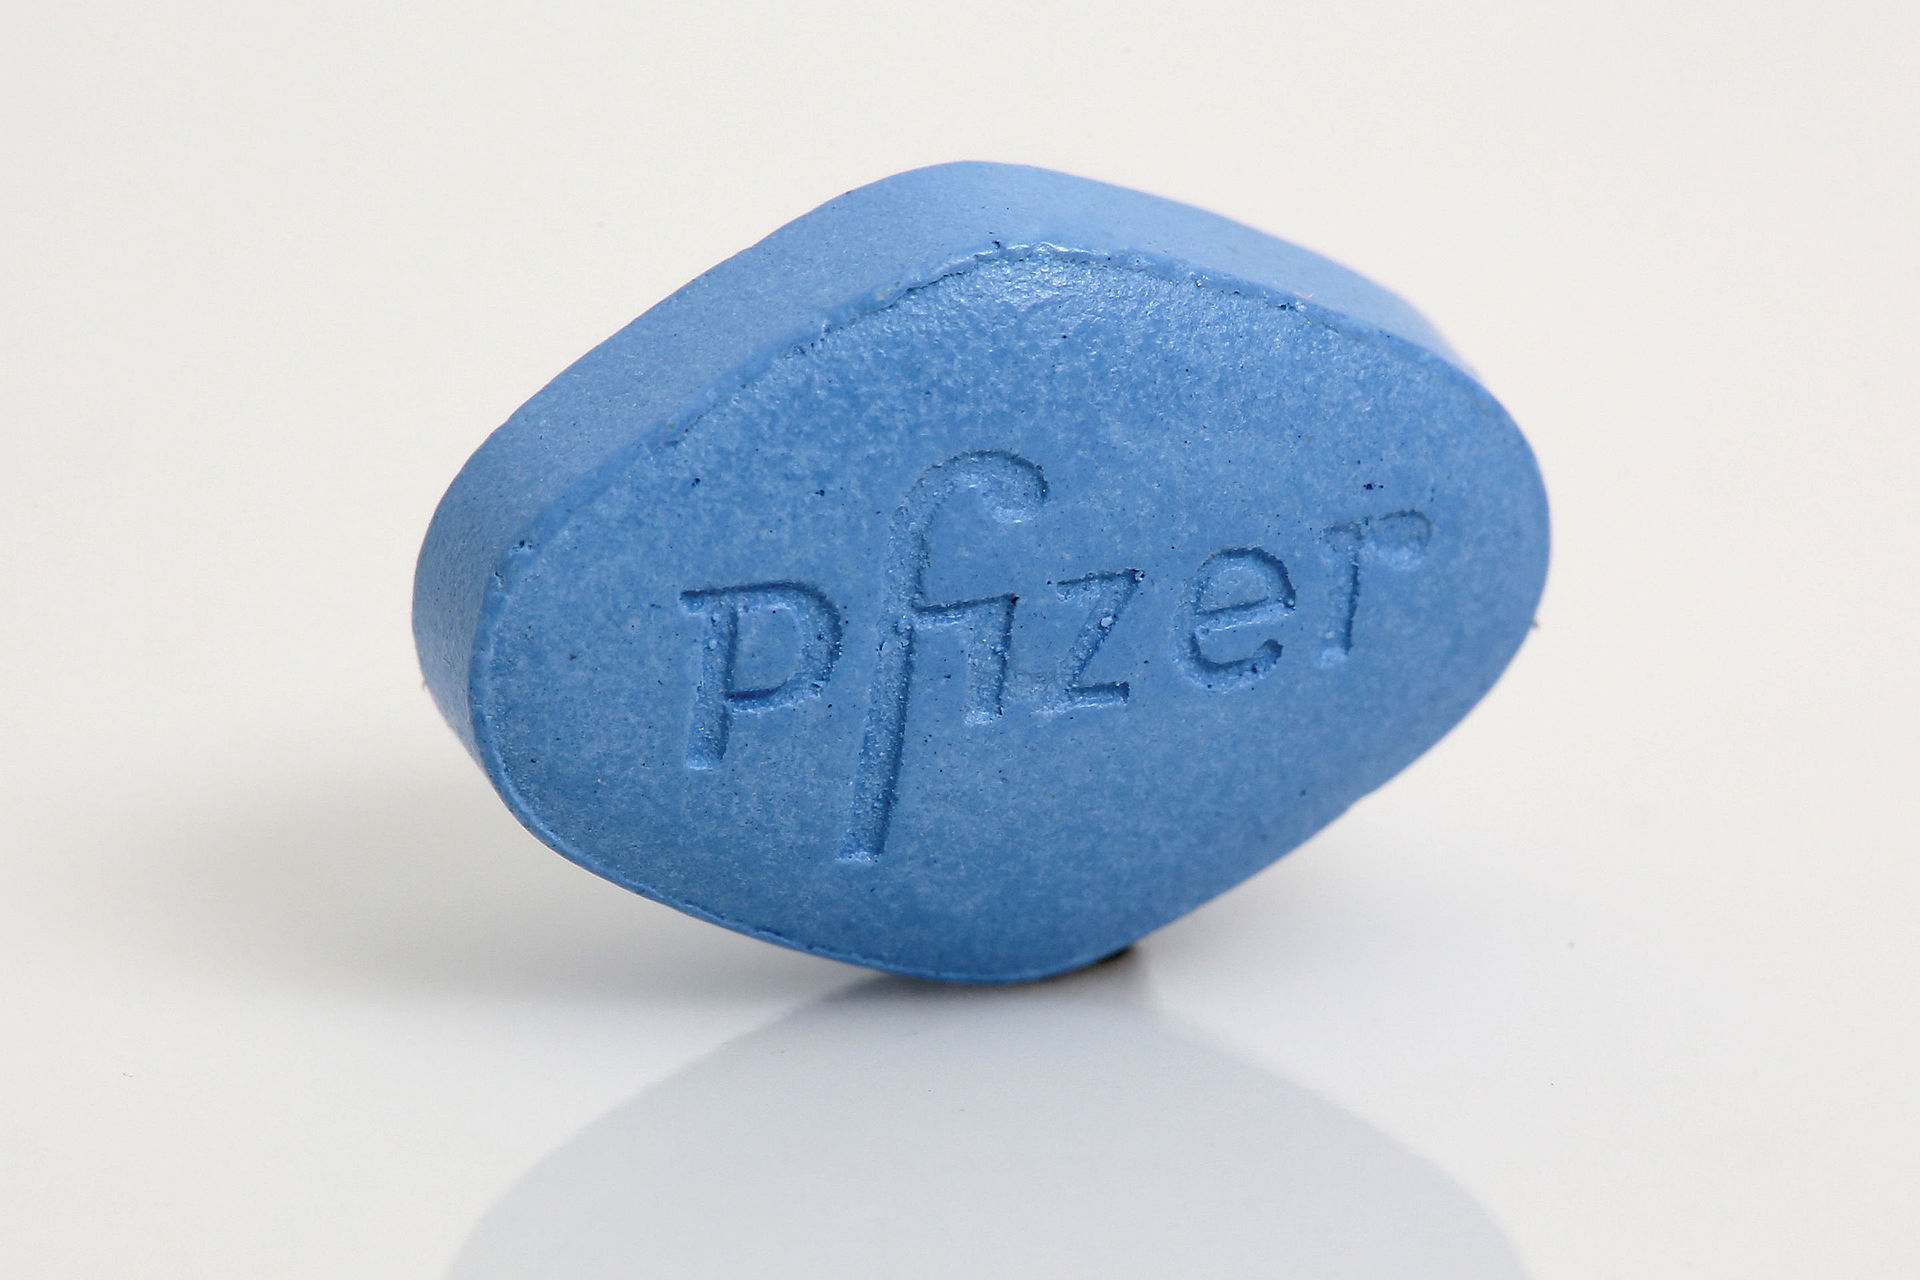 The original blue pill – Viagra from Pfizer